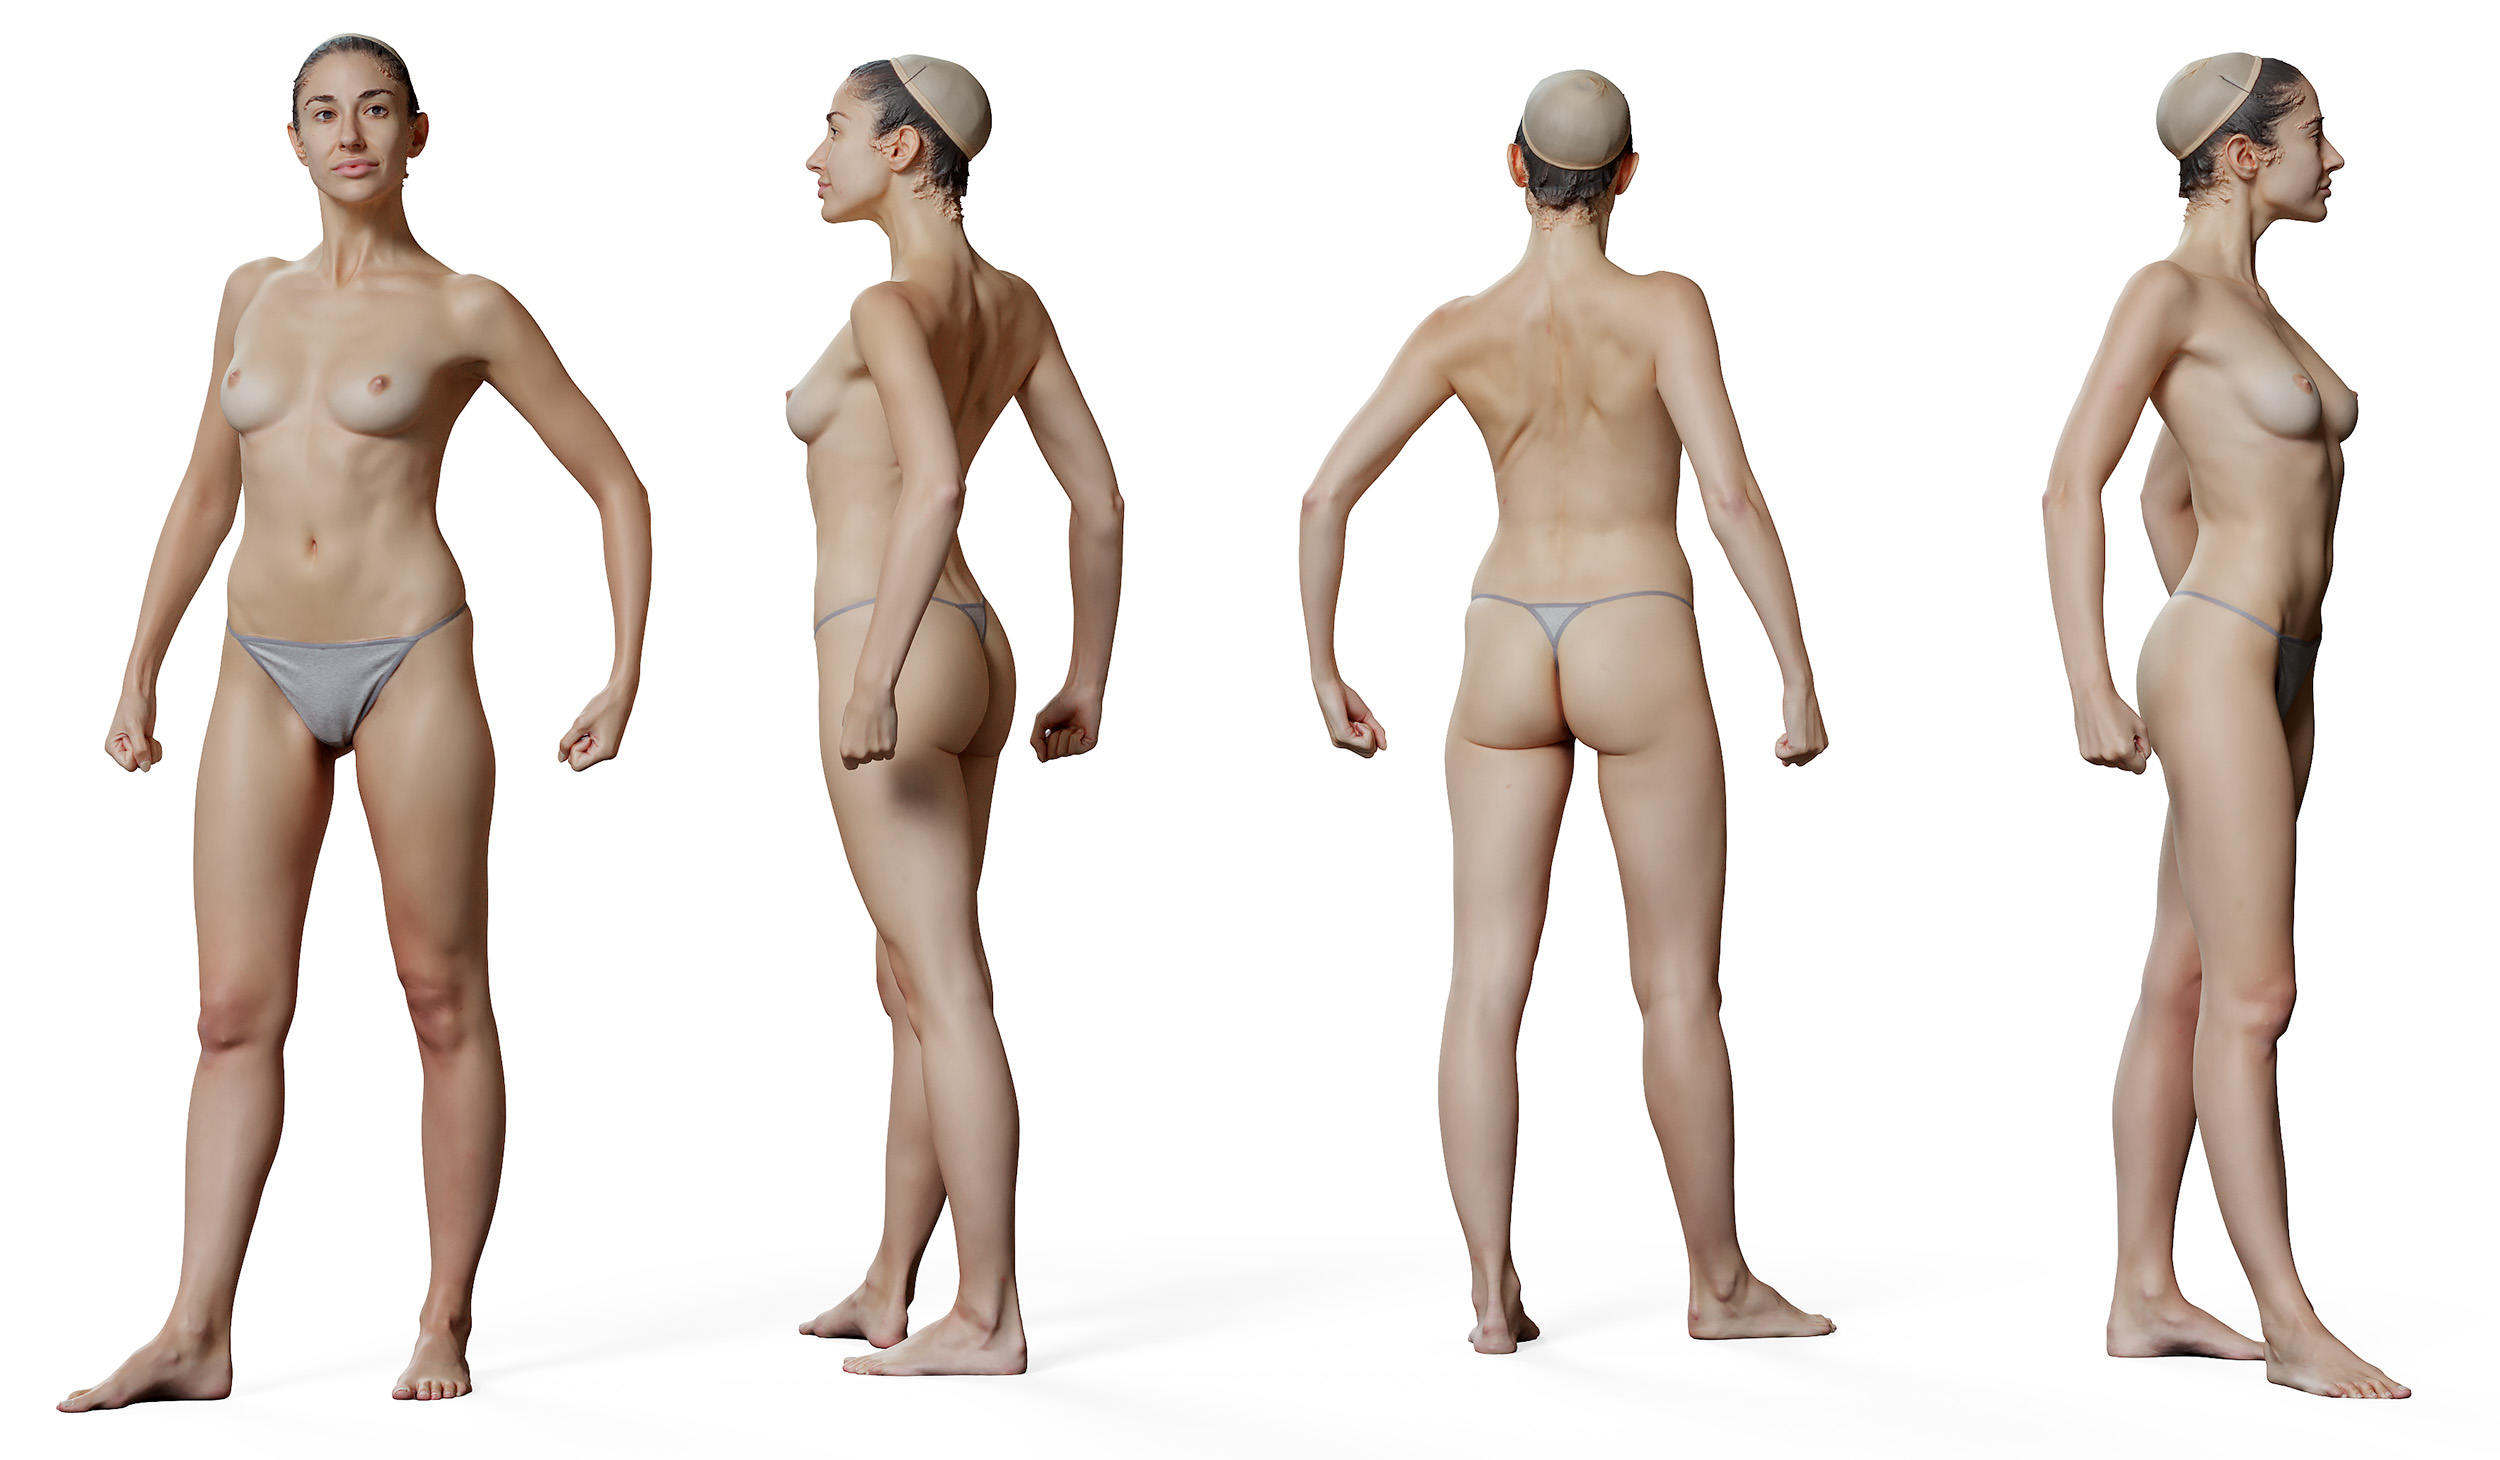 3D male body model download